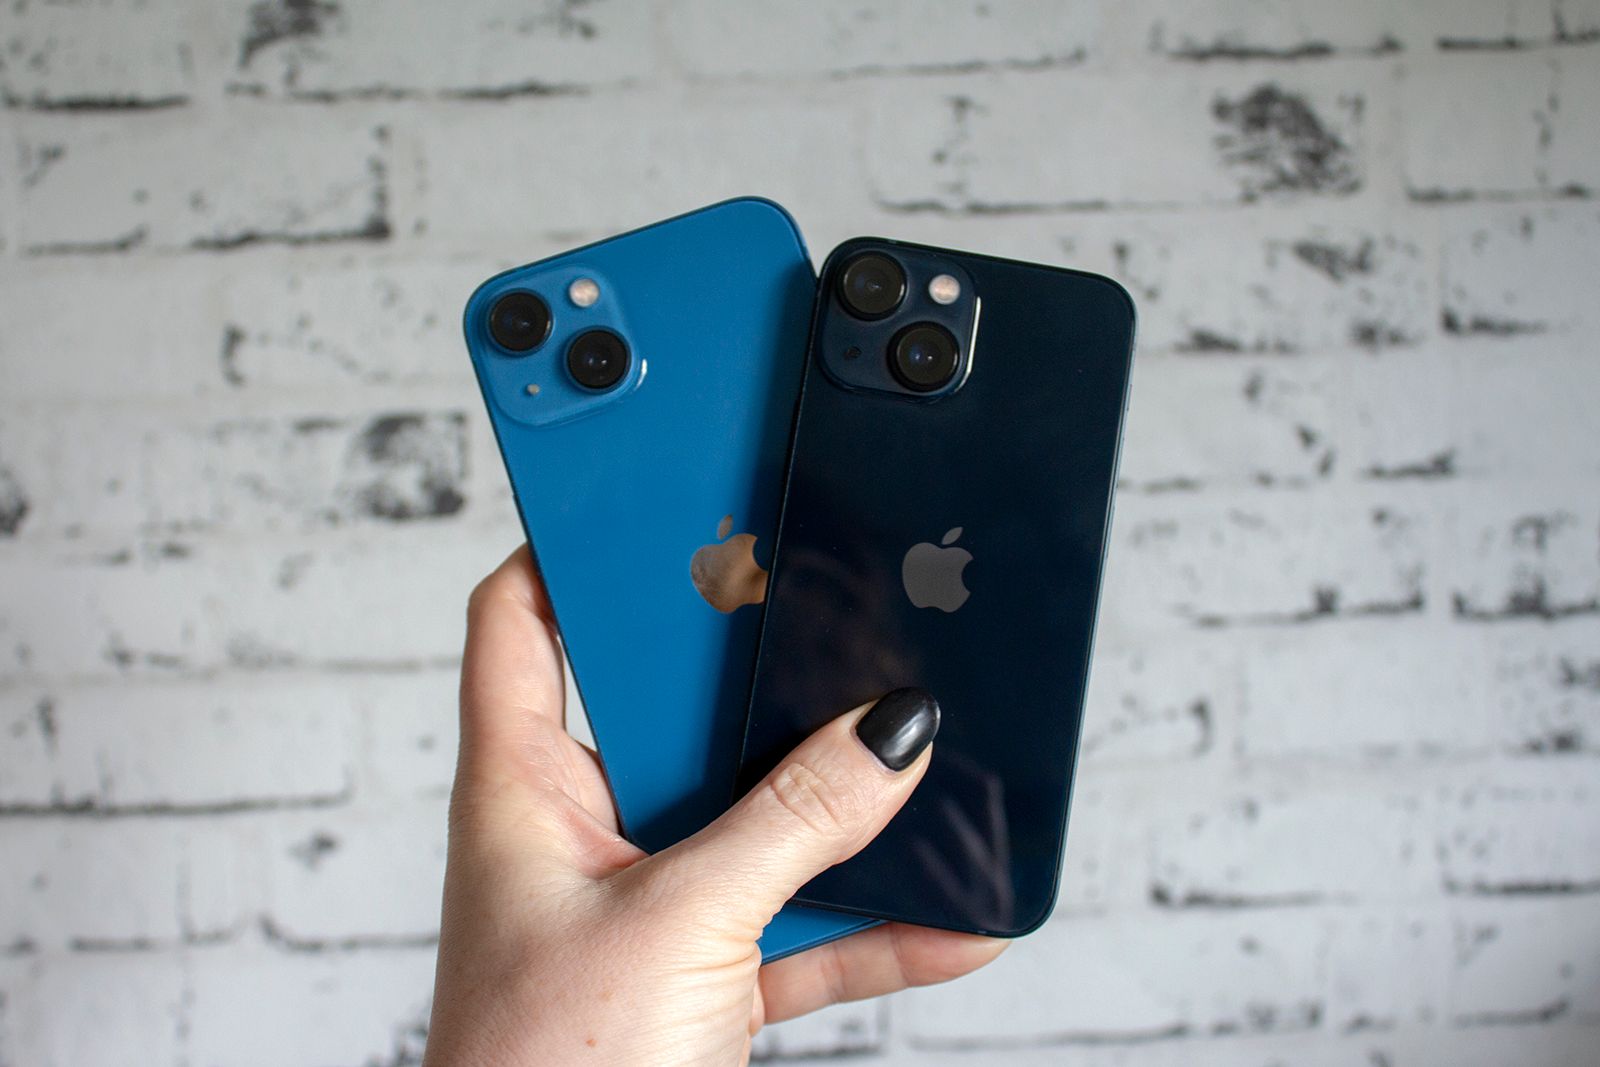 Apple instalará baterías más delgadas en los futuros iPhone 13, ¿por qué?, Smartphones